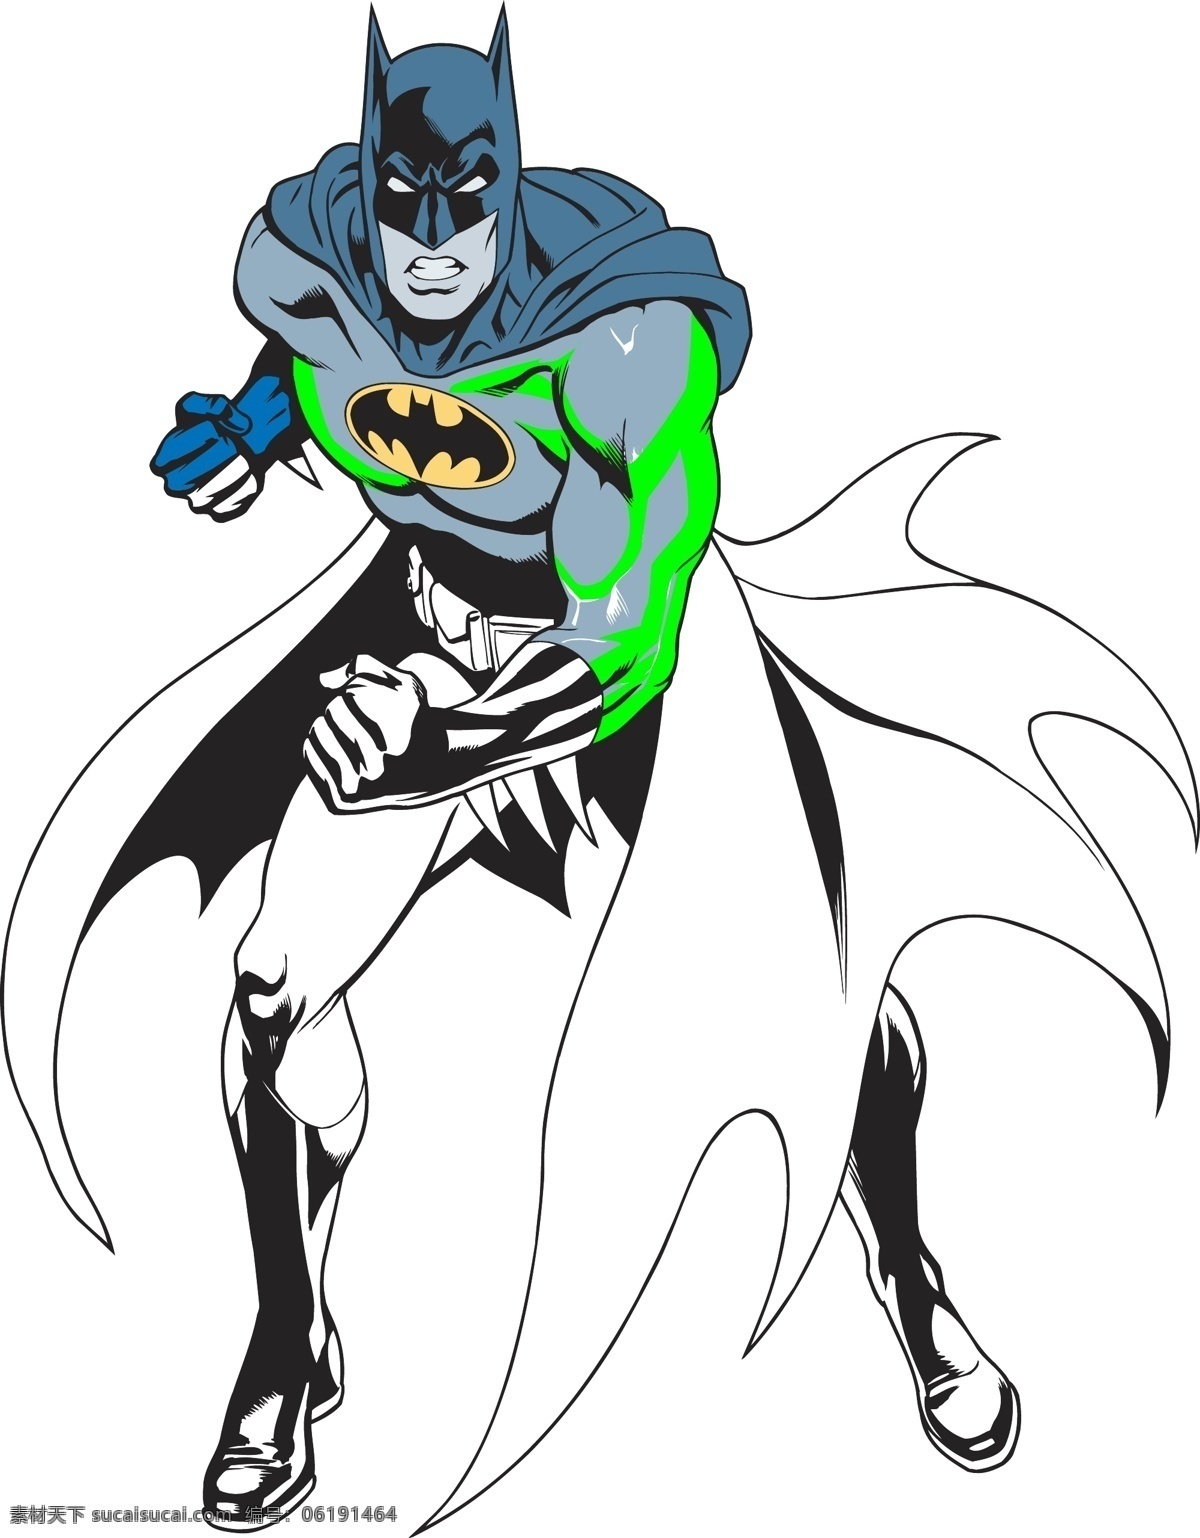 蝙蝠侠 动漫人物系列 英雄人物 漫画英雄 正义英雄 动漫人物 动漫动画